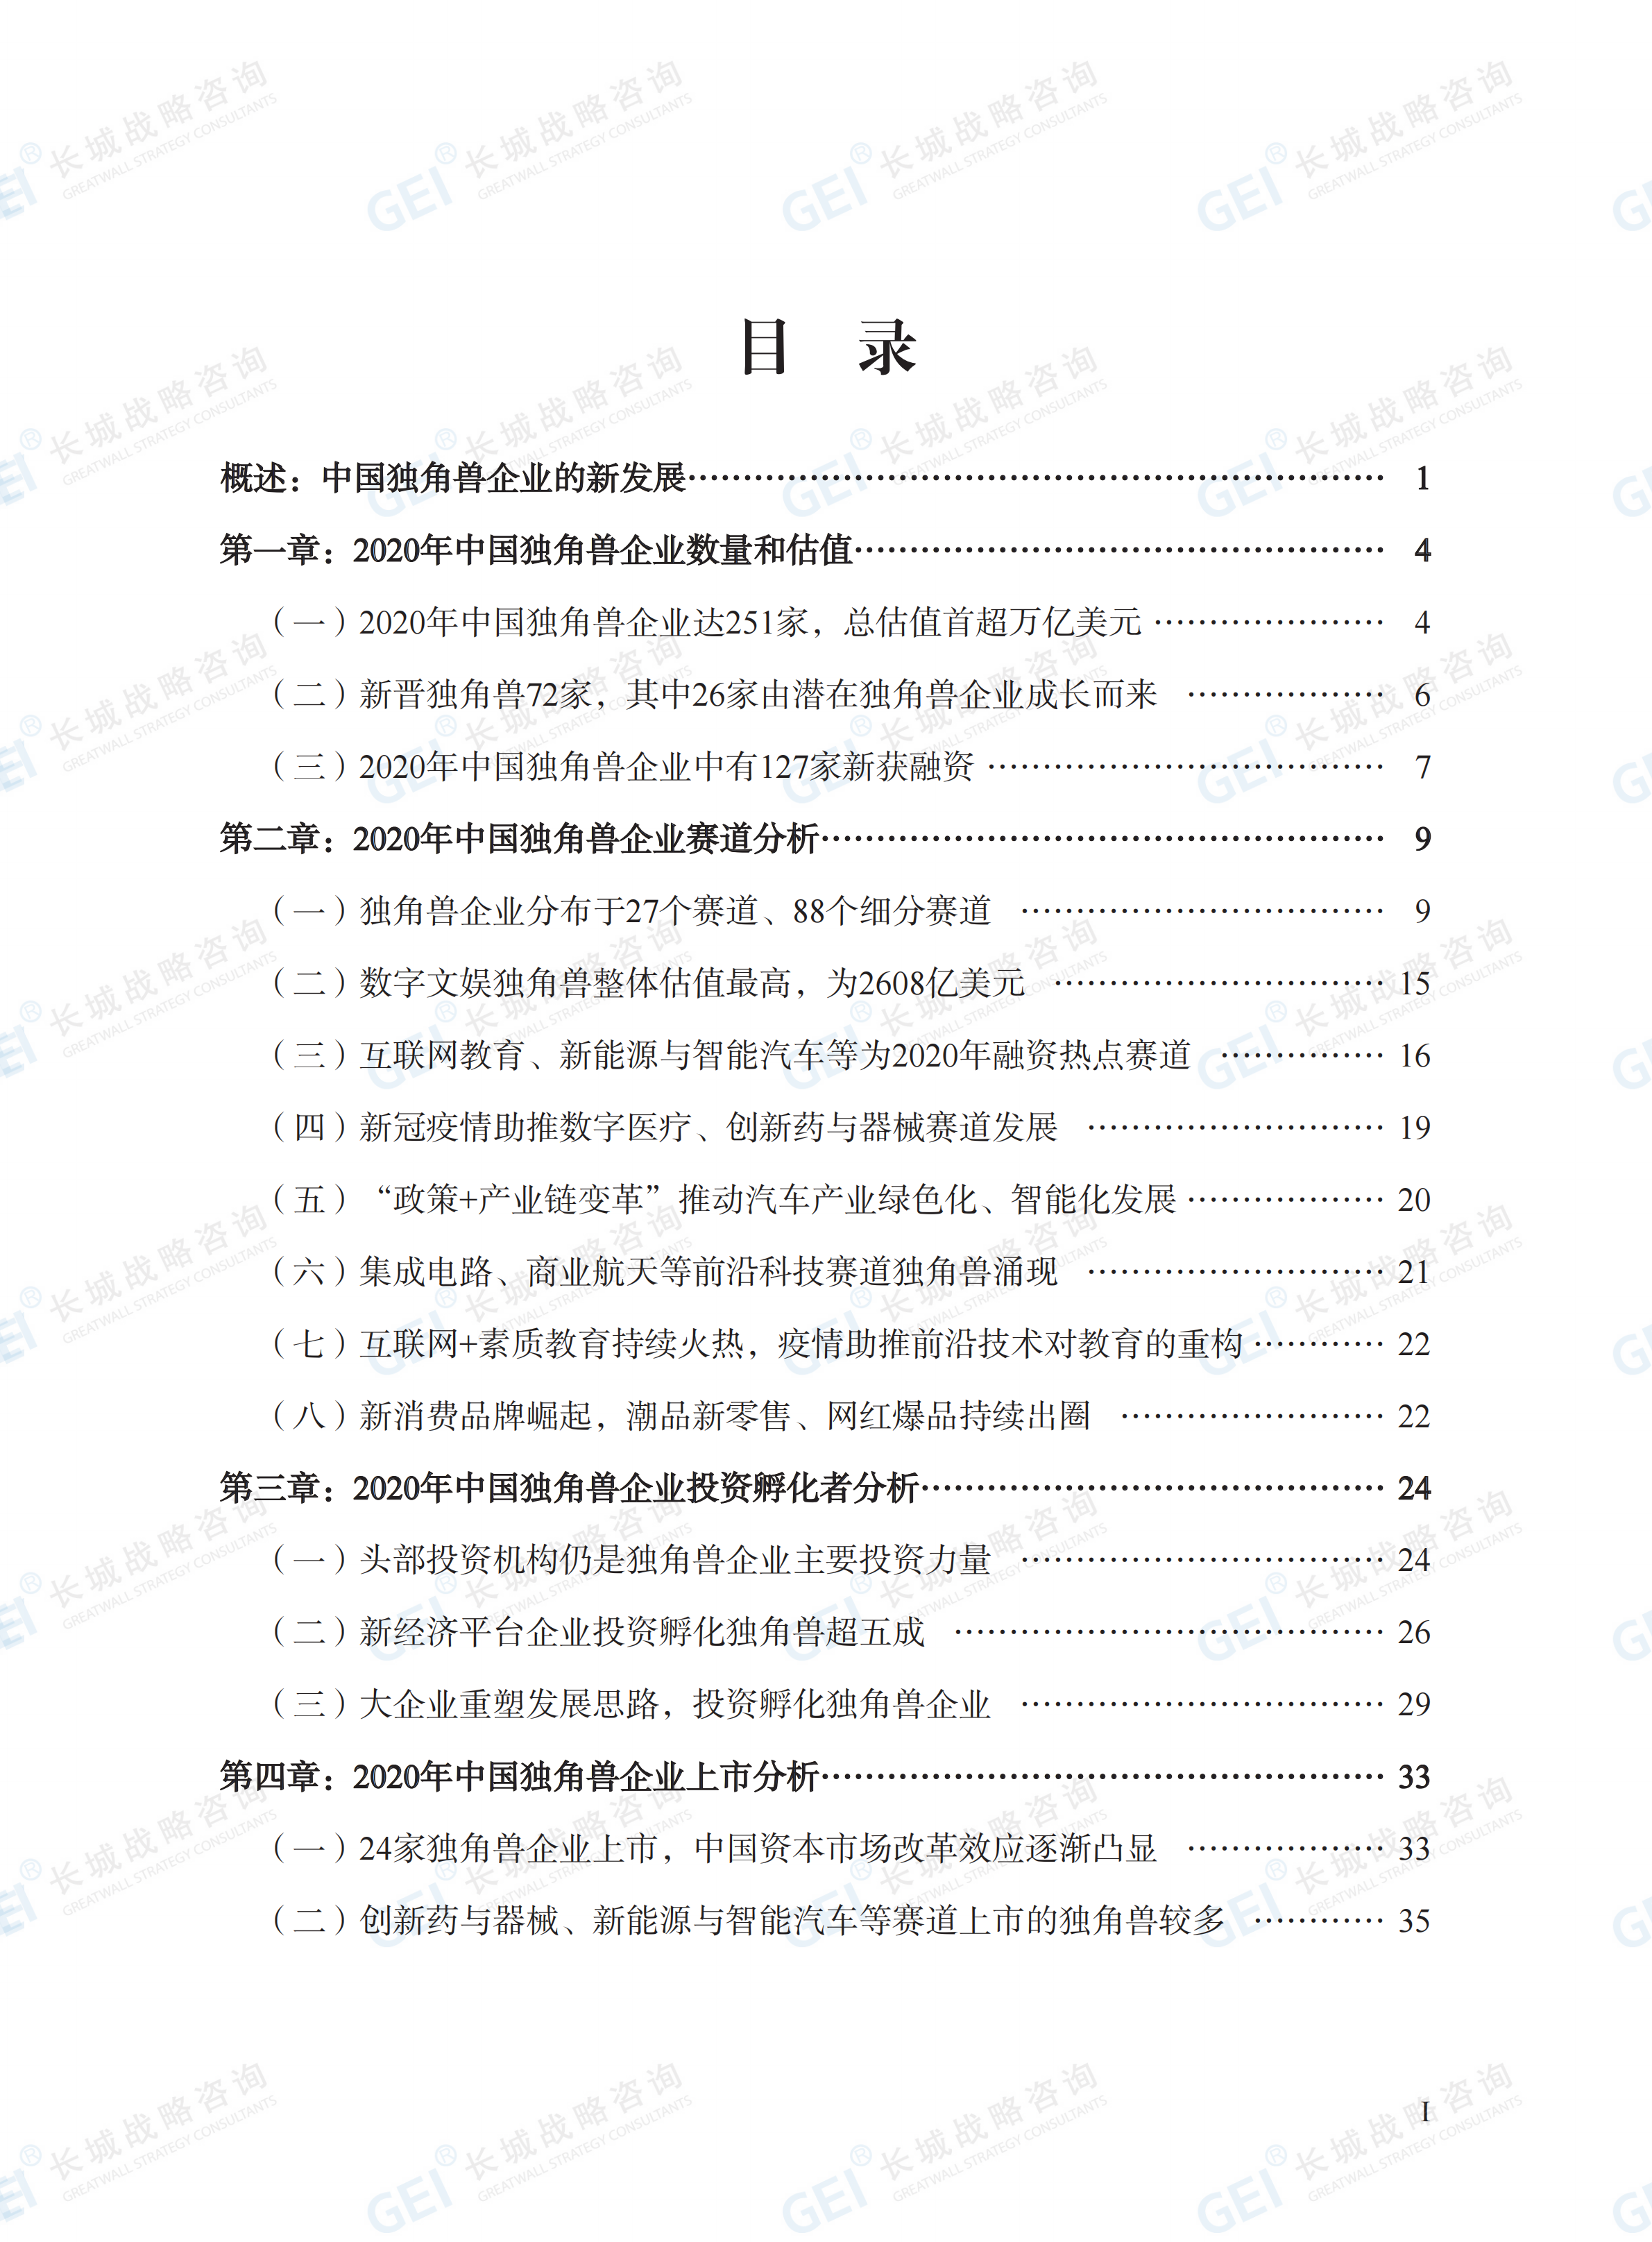 中國獨角獸企業研究報告2021-水印(1)_05.png